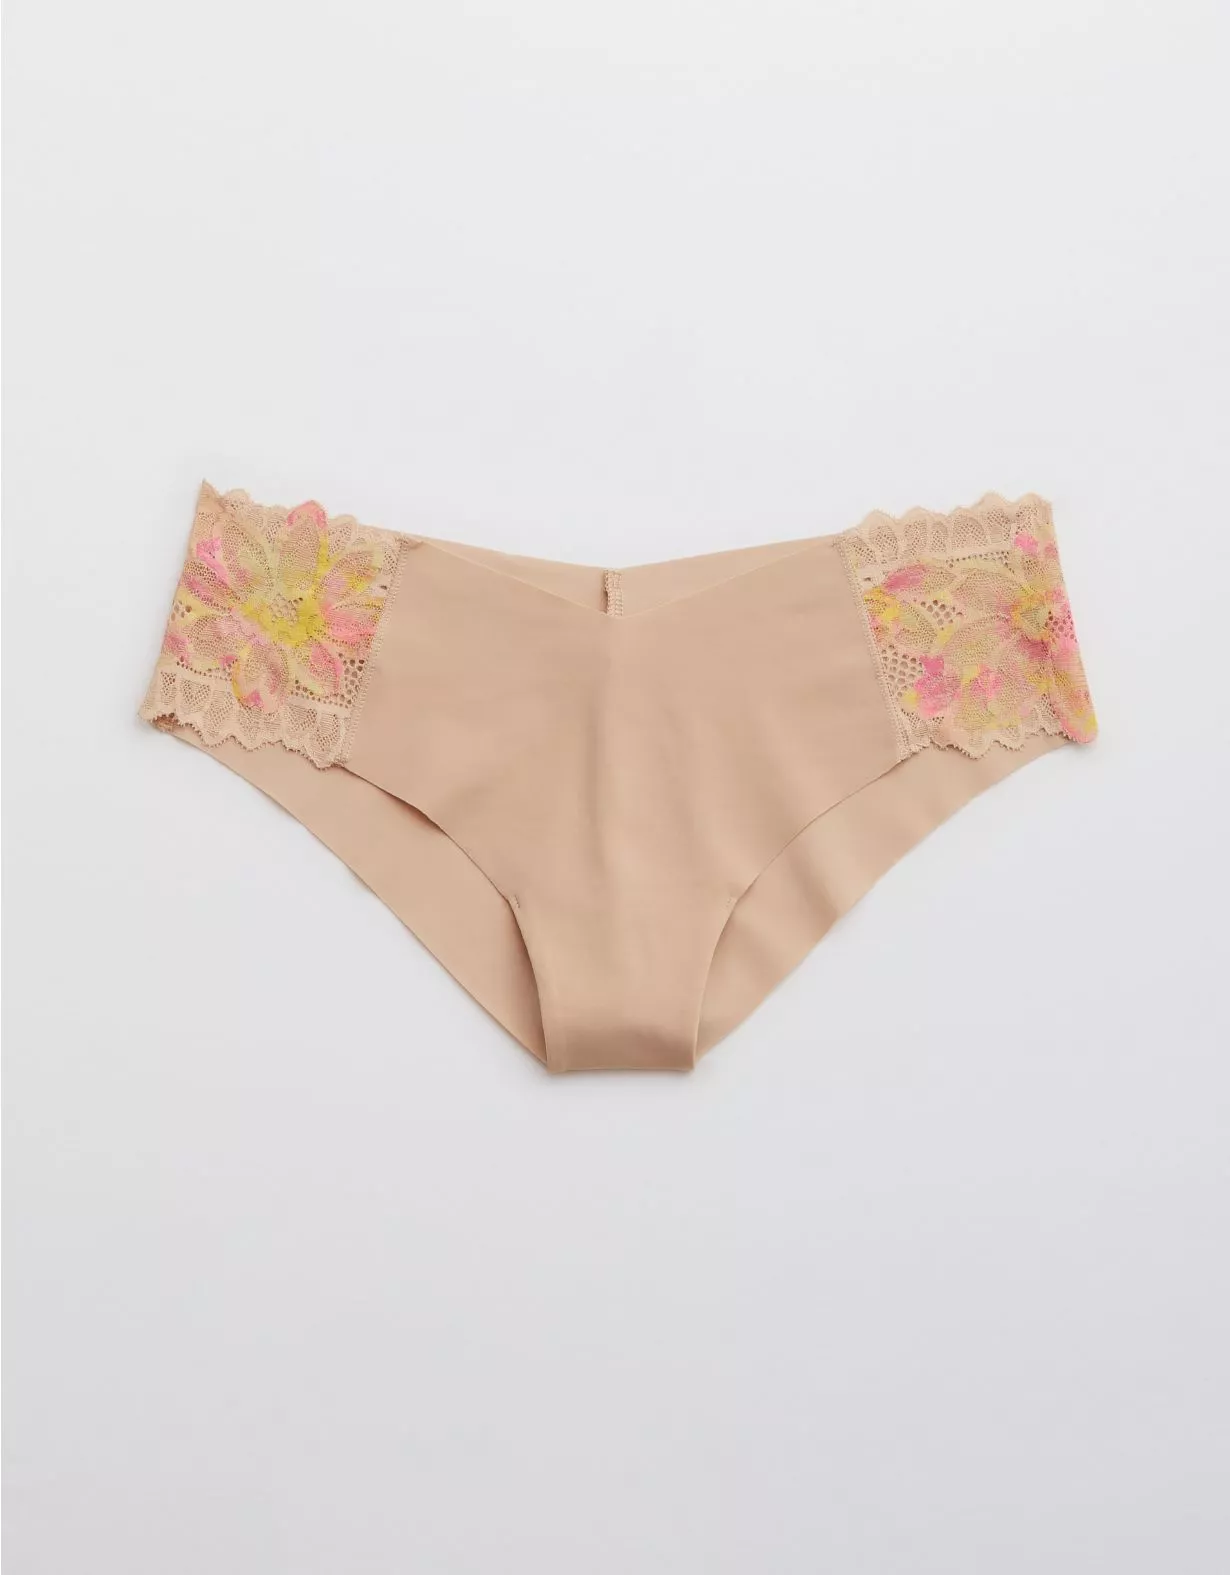 Aerie Sunnie Blossom Lace Cheeky Underwear In Pink